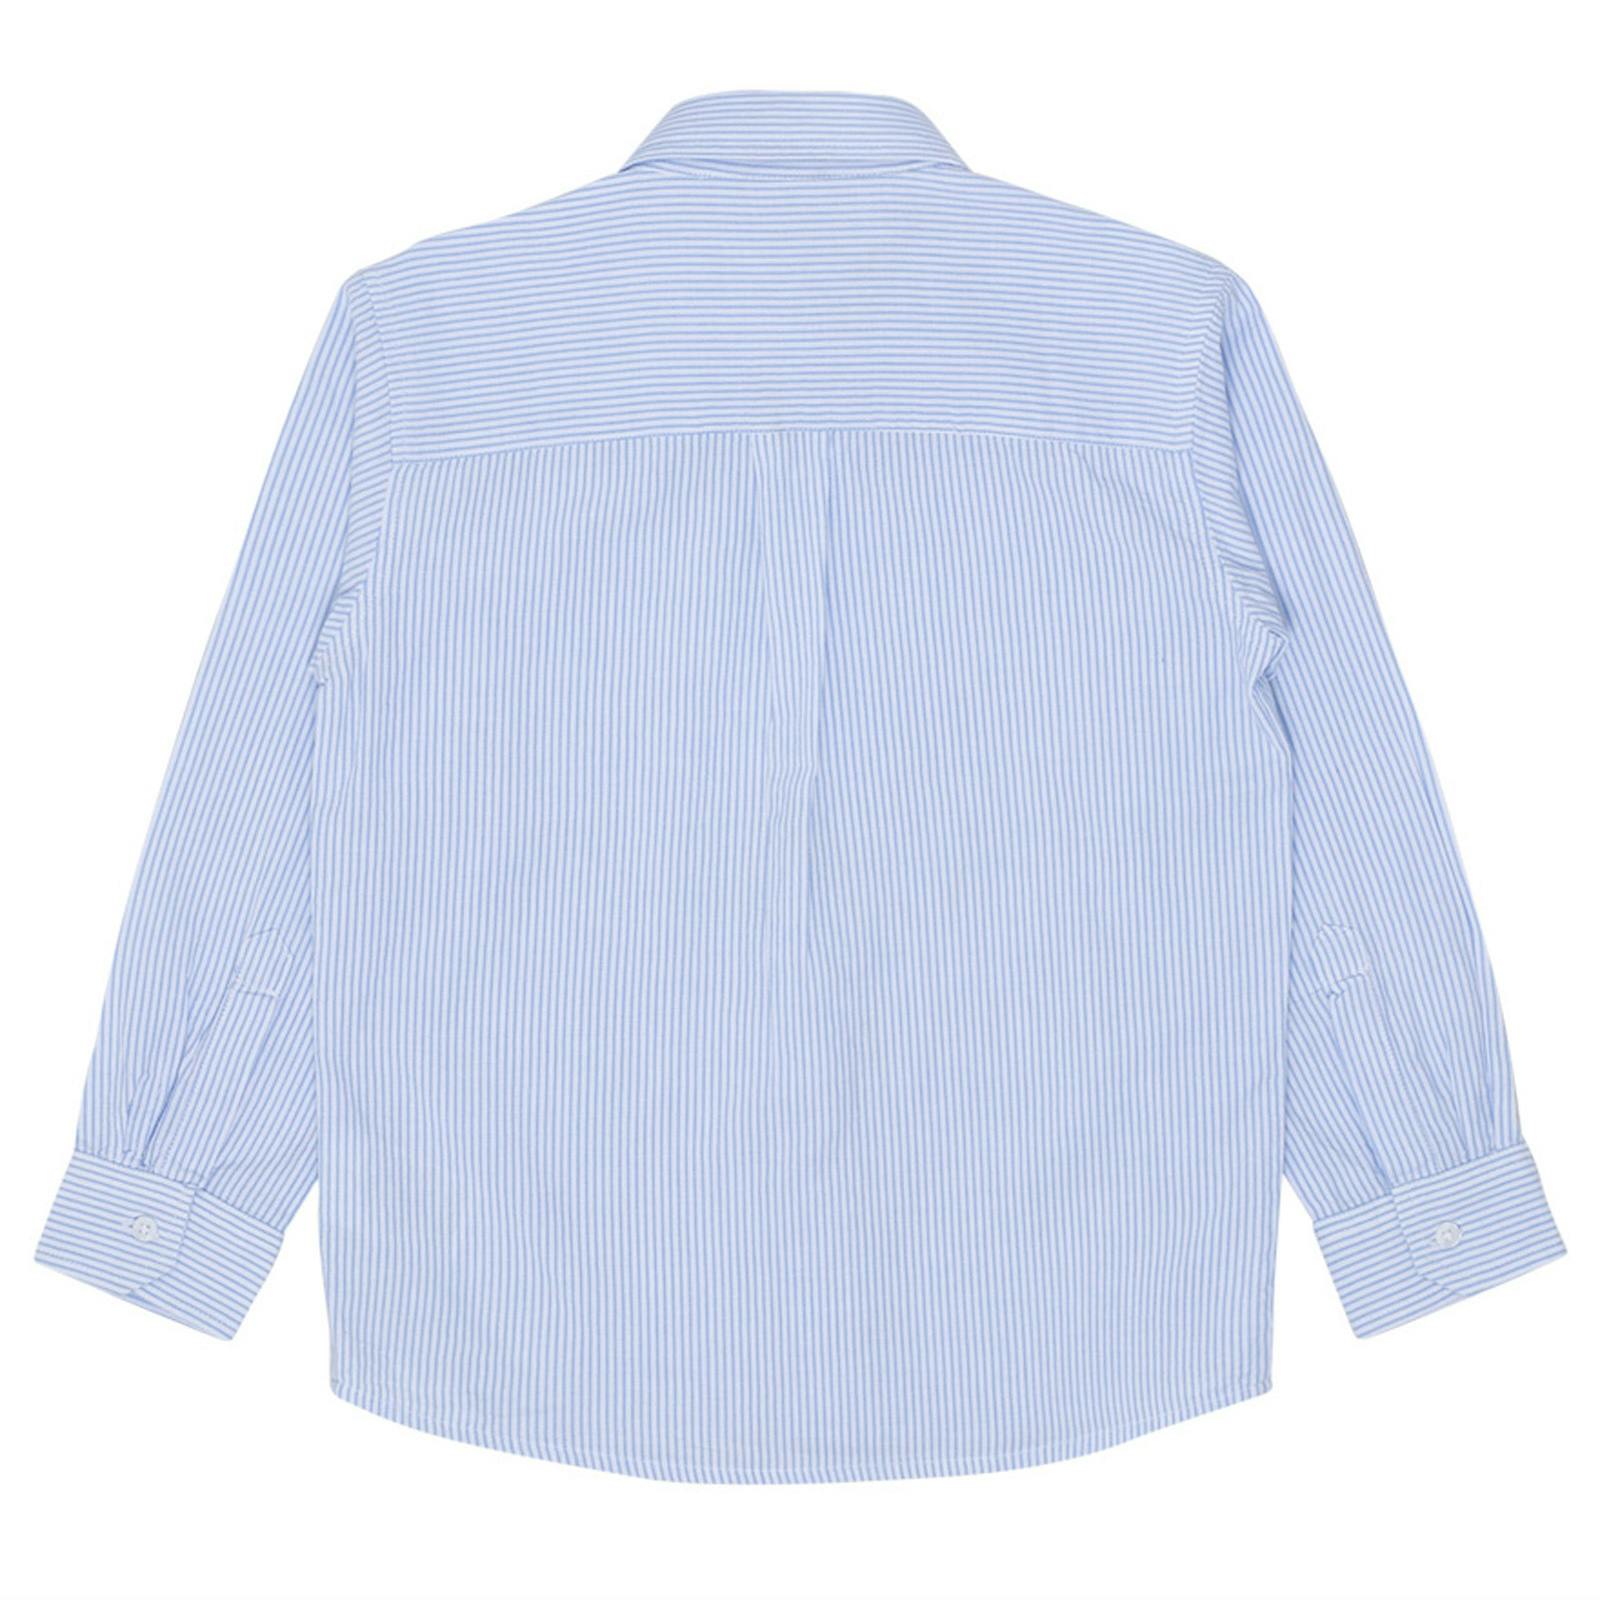 Skjorta - Ruben smalrandig ljusblå